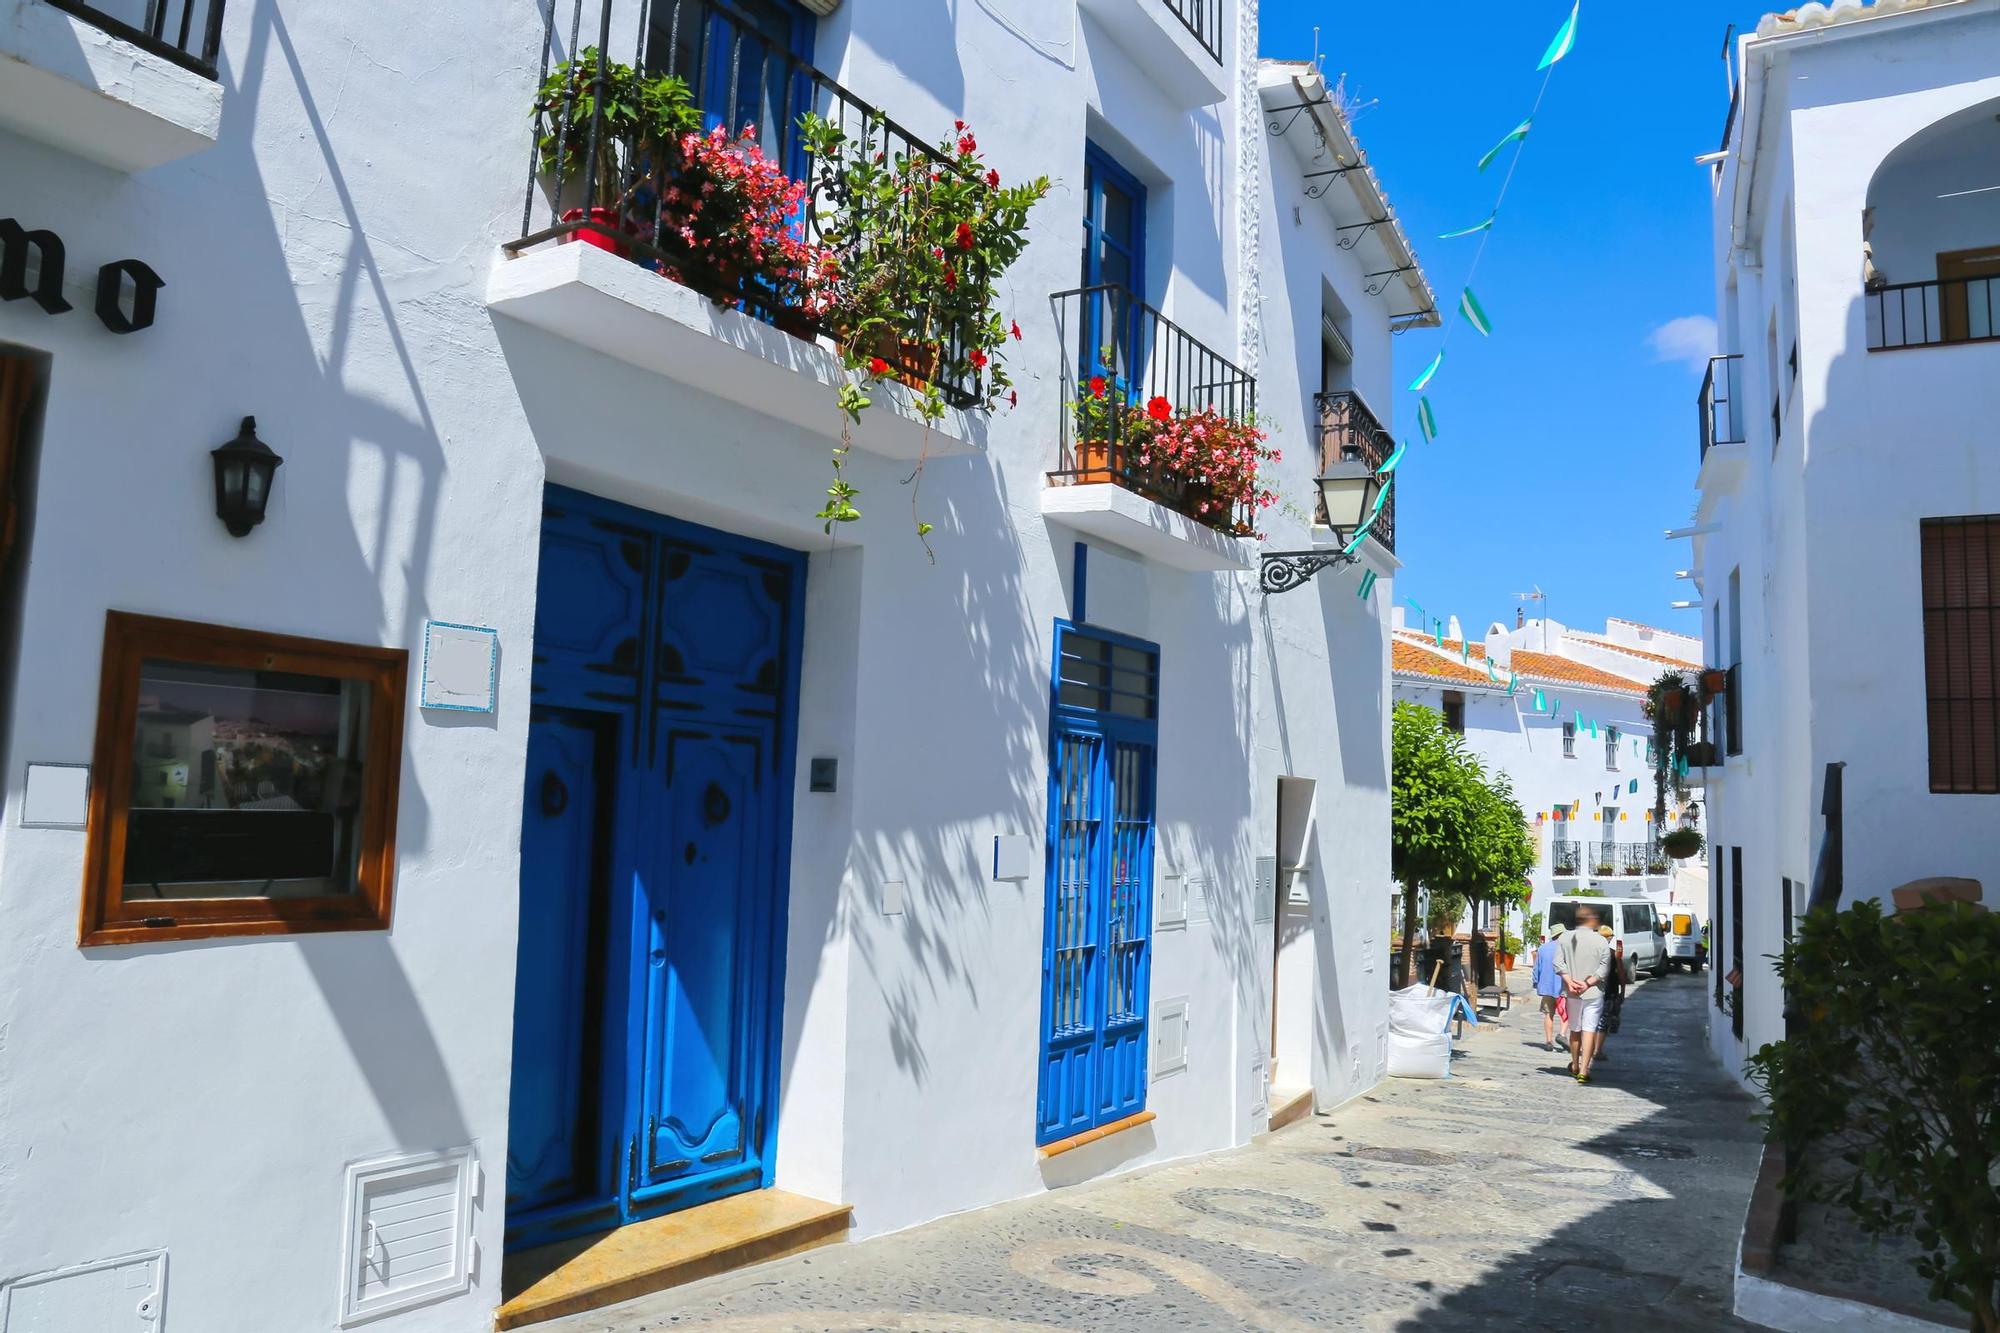 La combinación de color ‘blanquiazul’ hace algo único este pueblo en Málaga